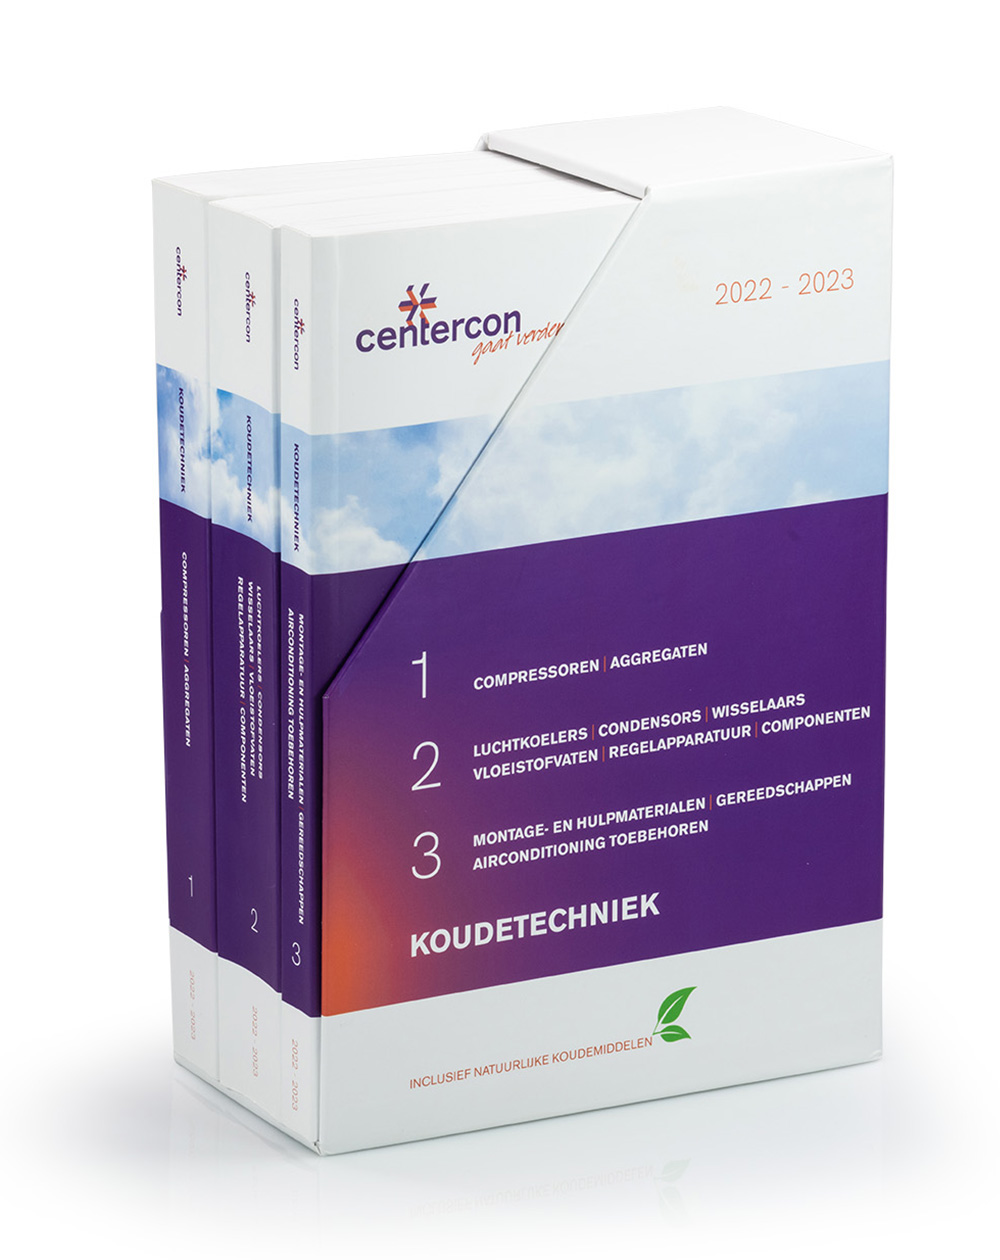 Centercon Brochure 